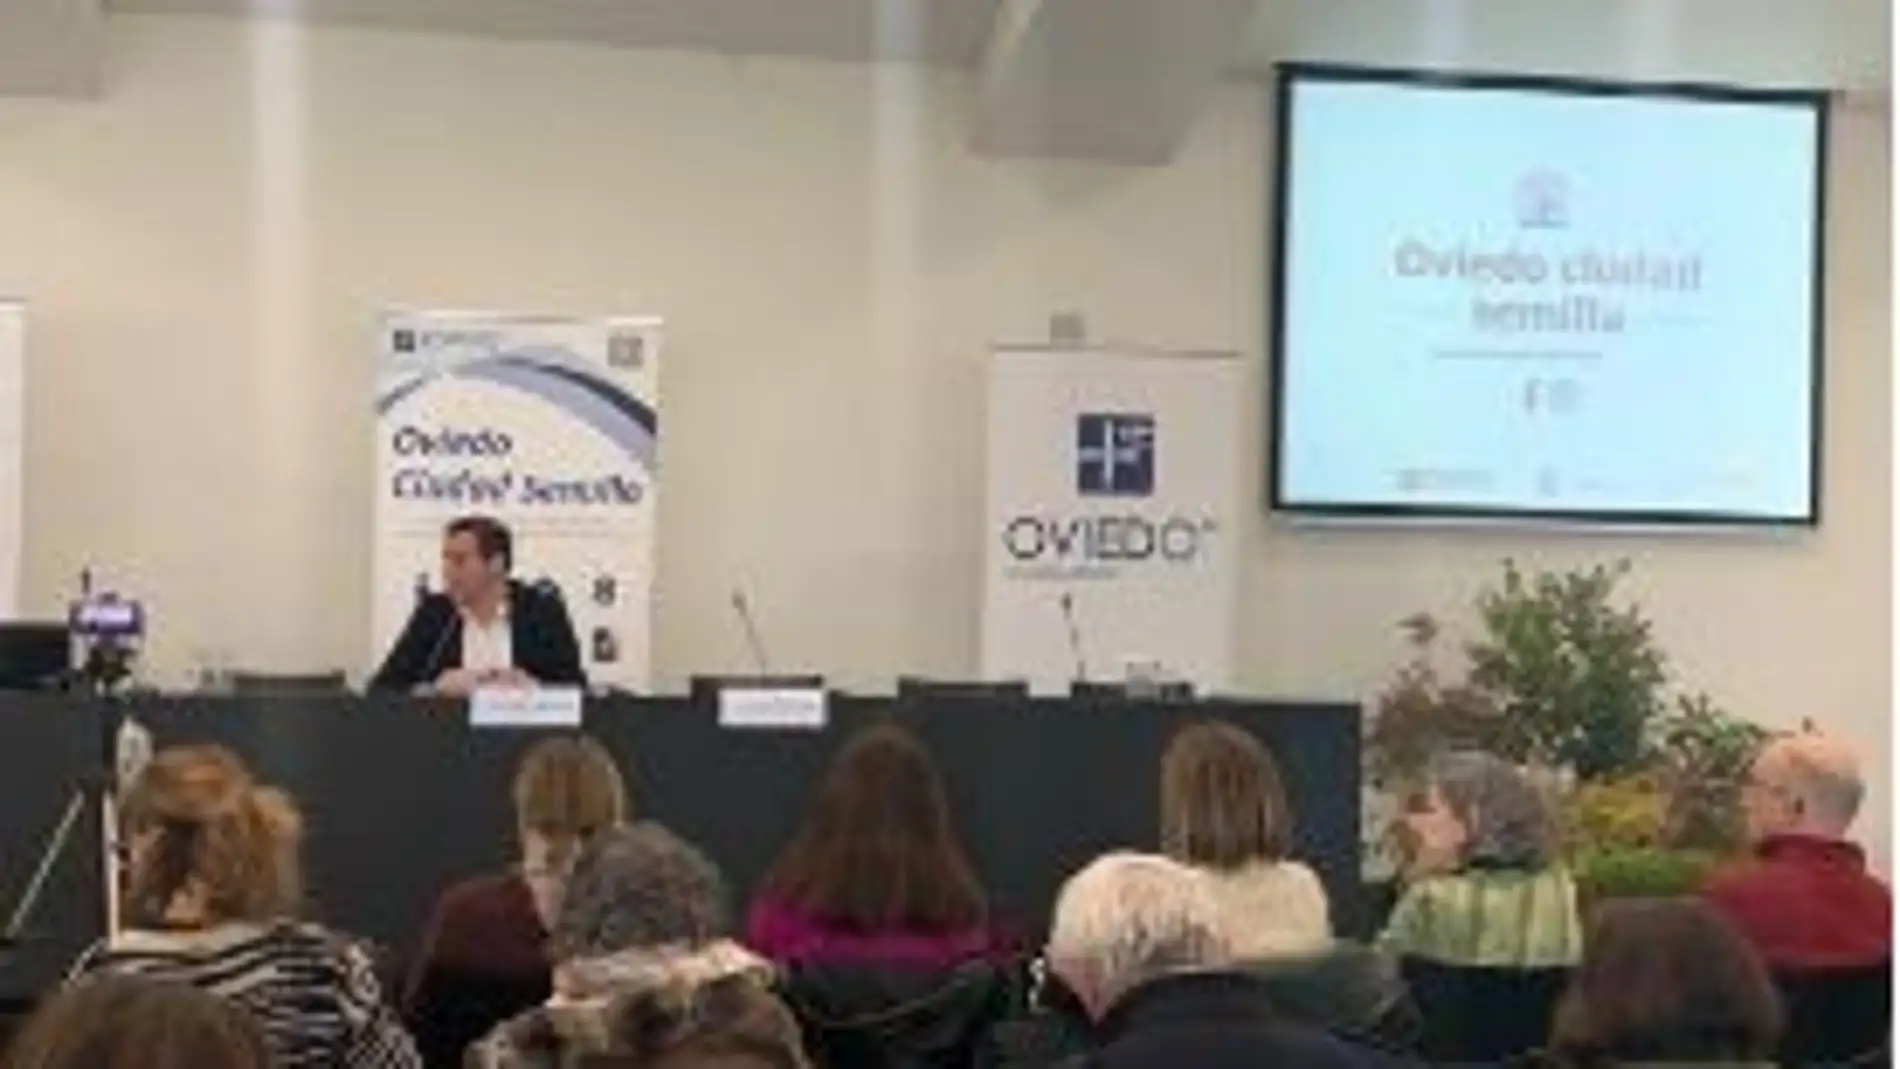 Economía social y empleo se dan la mano en Oviedo